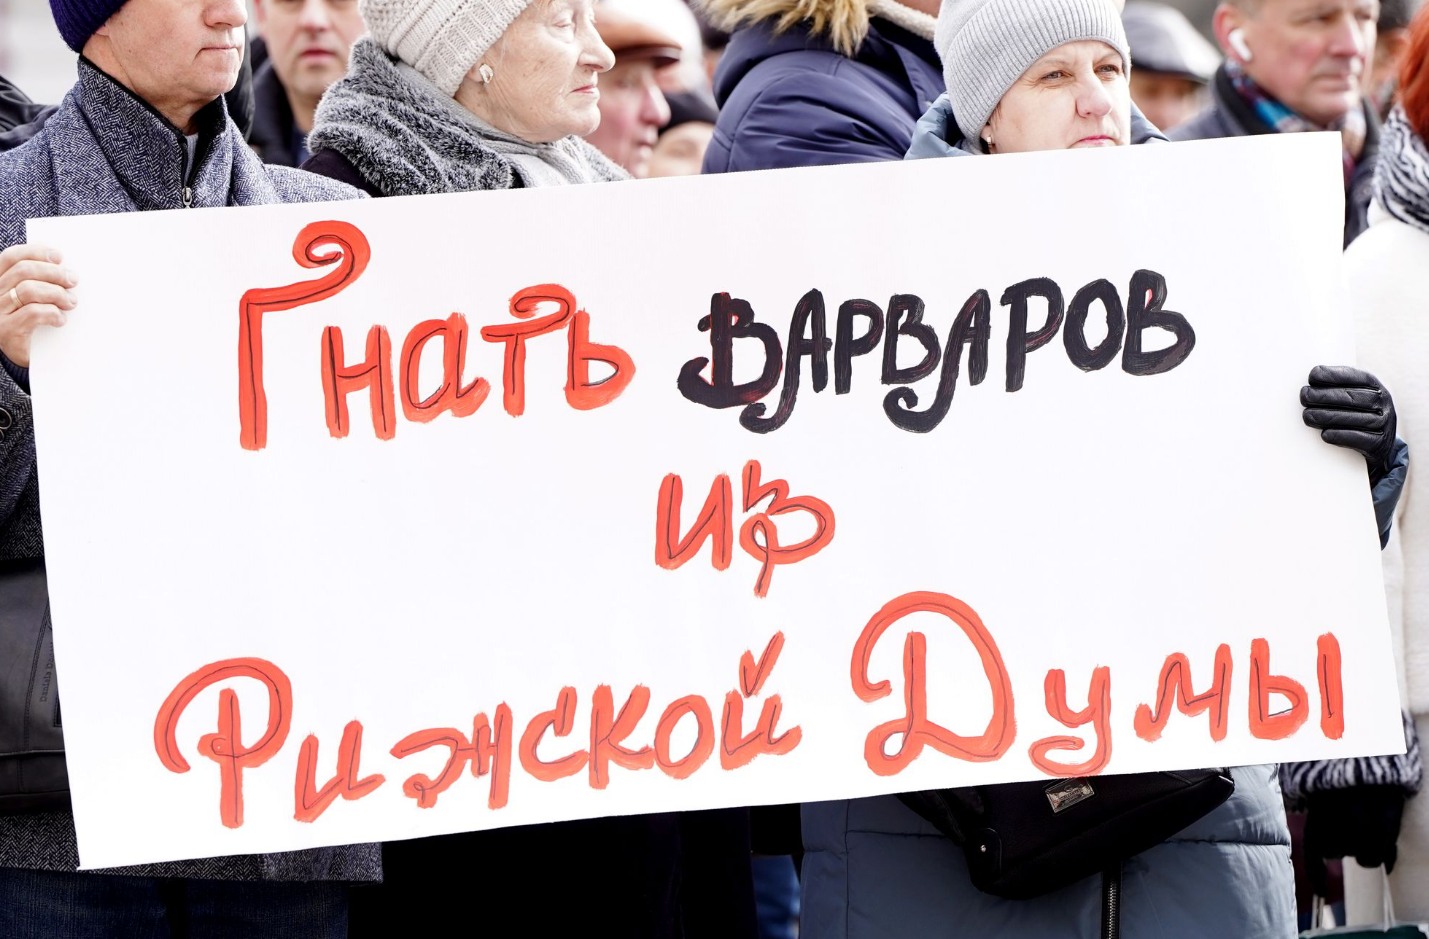 В Риге состоялся пикет против сноса памятника Пушкину